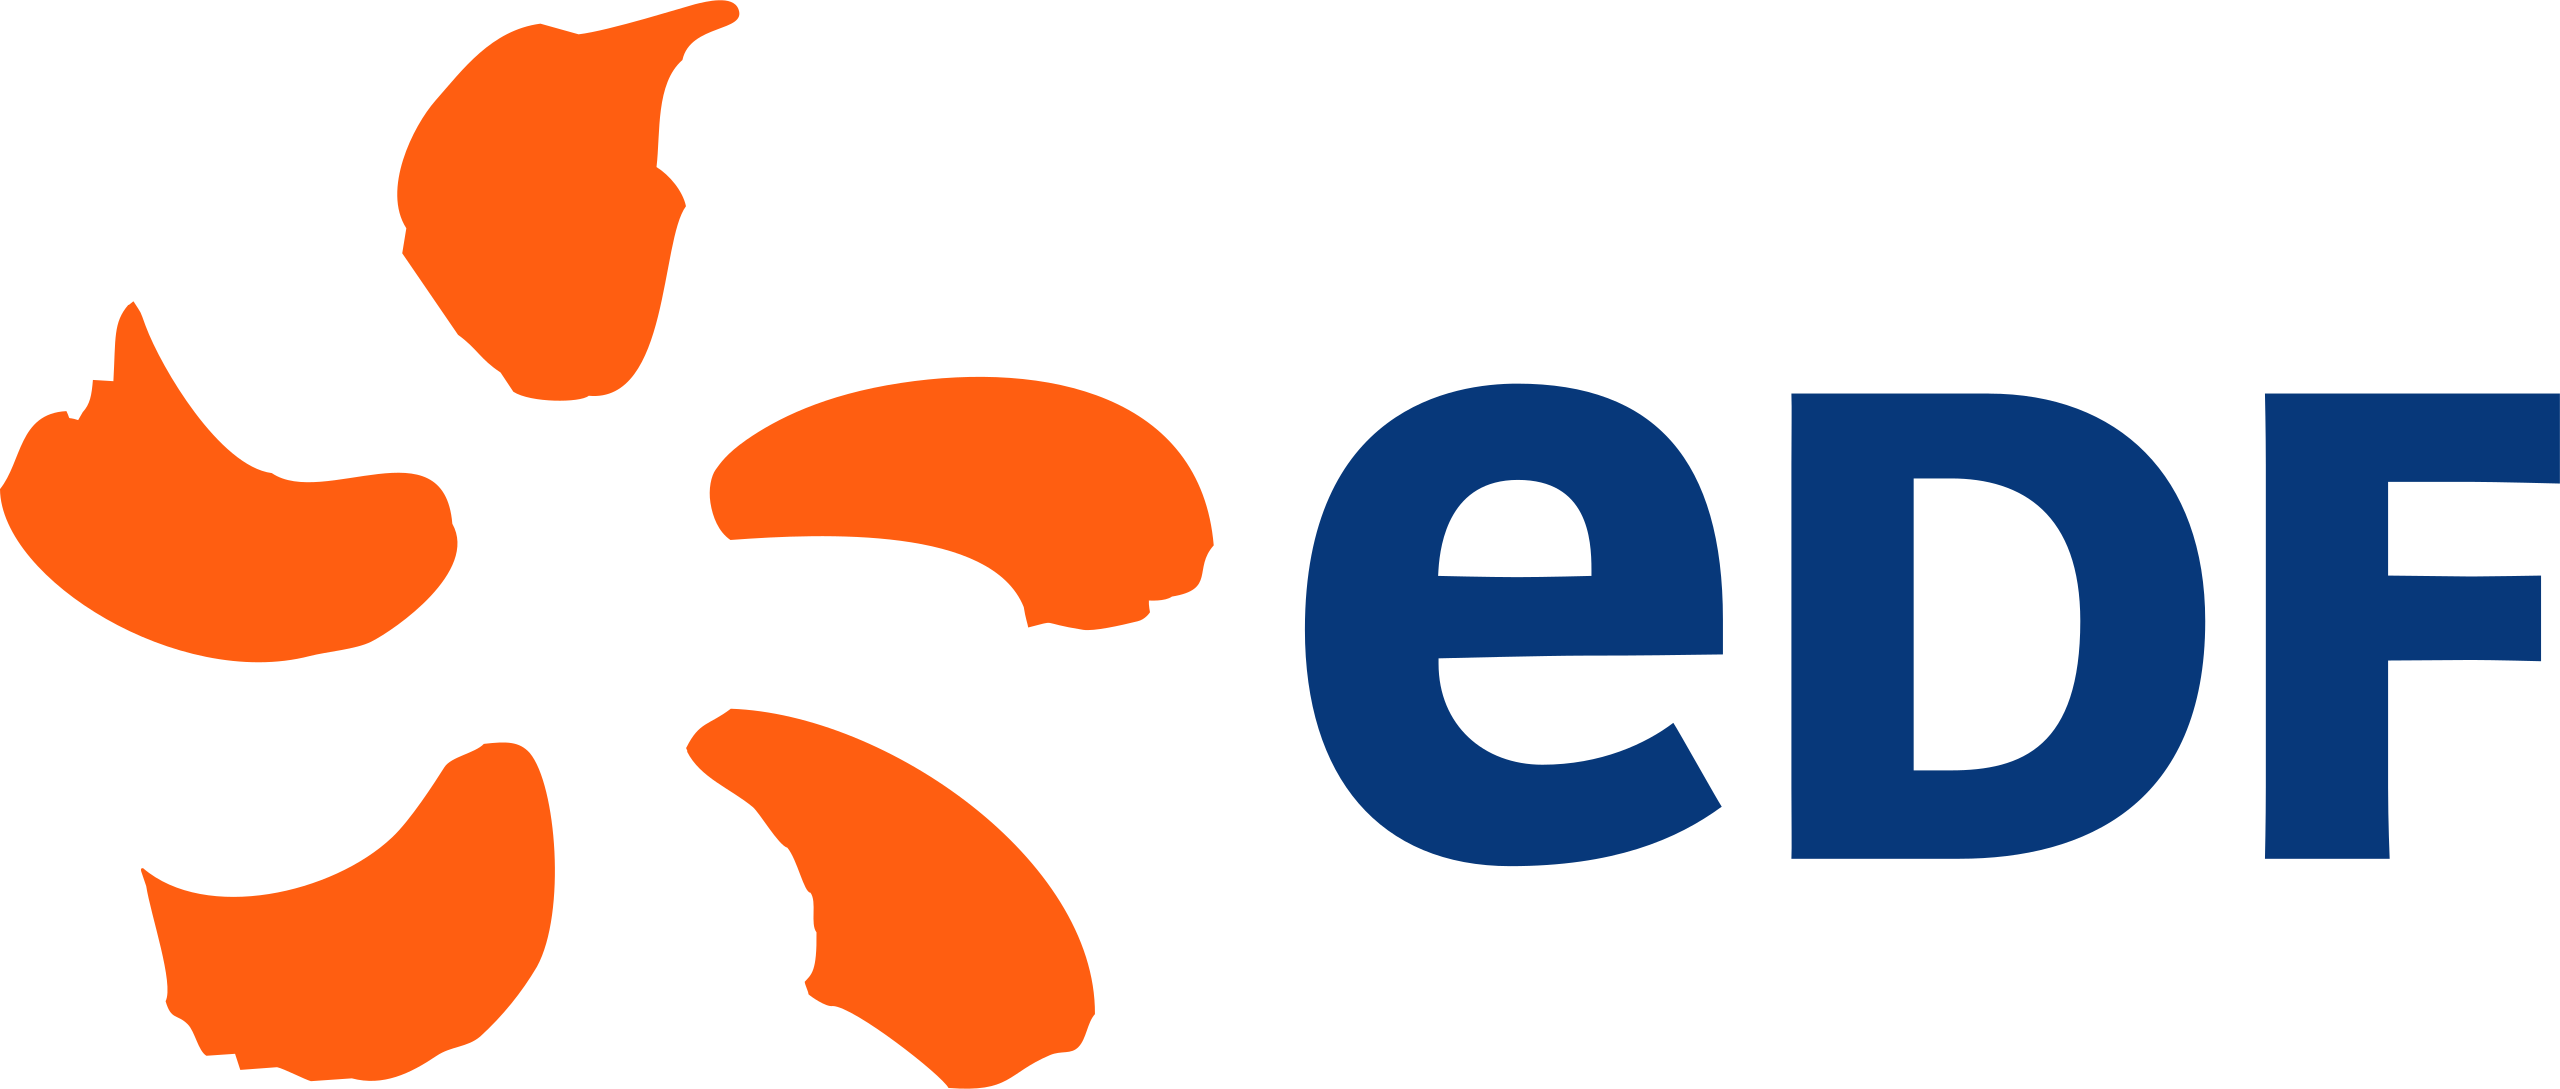 Electricite_de_France_logo.svg.png